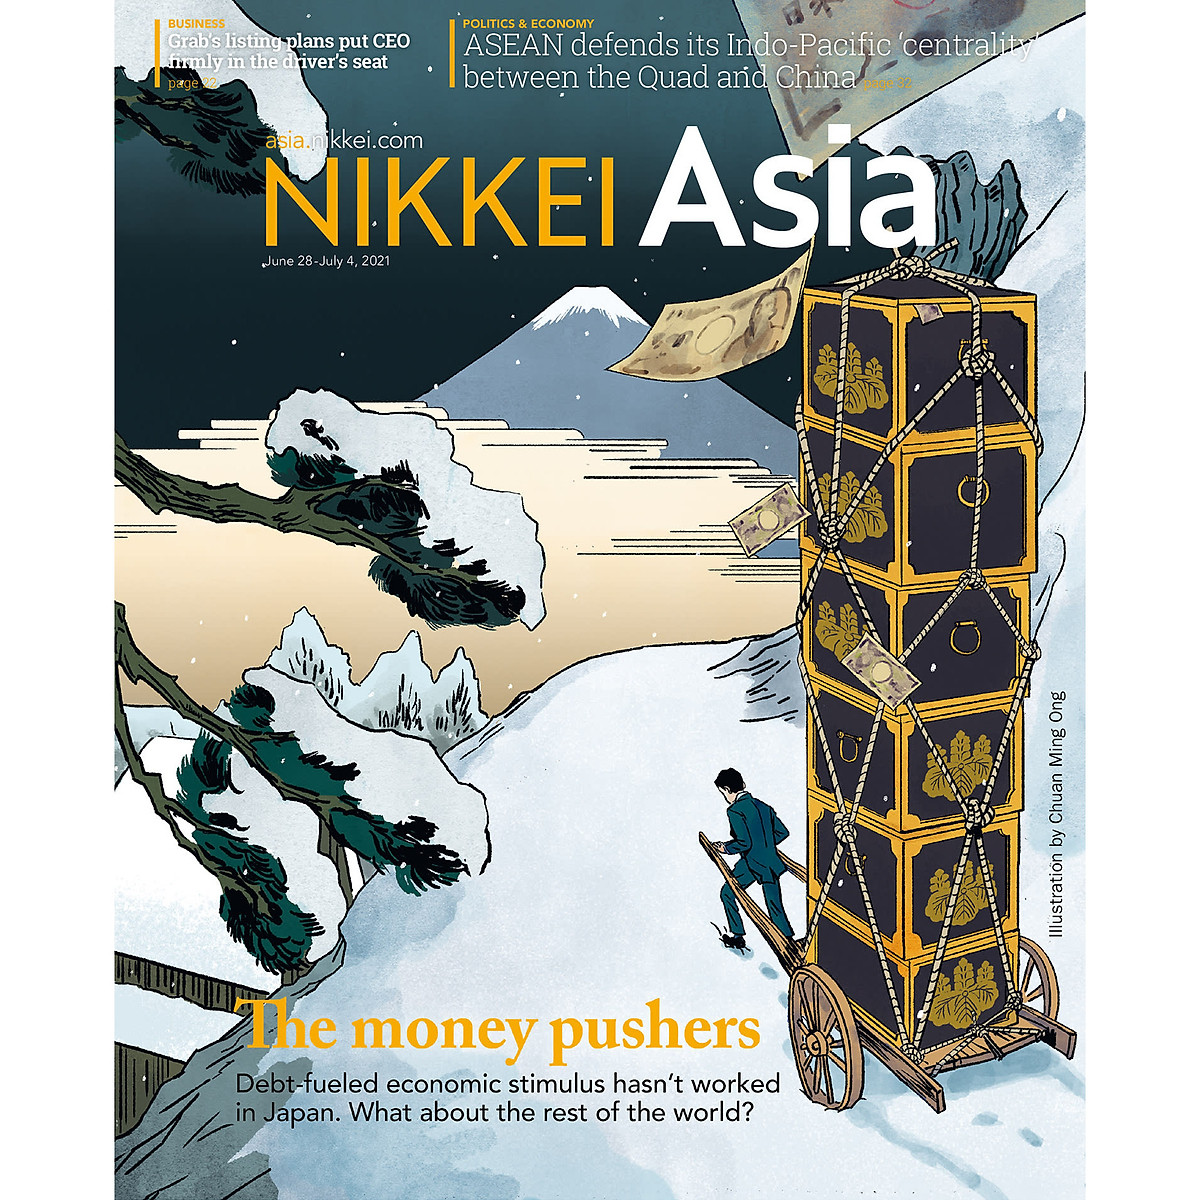 Nikkei Asian Review: Nikkei Asia - 2021: THE MONEY PUSHERS - 26.21 tạp chí kinh tế nước ngoài, nhập khẩu từ Singapore